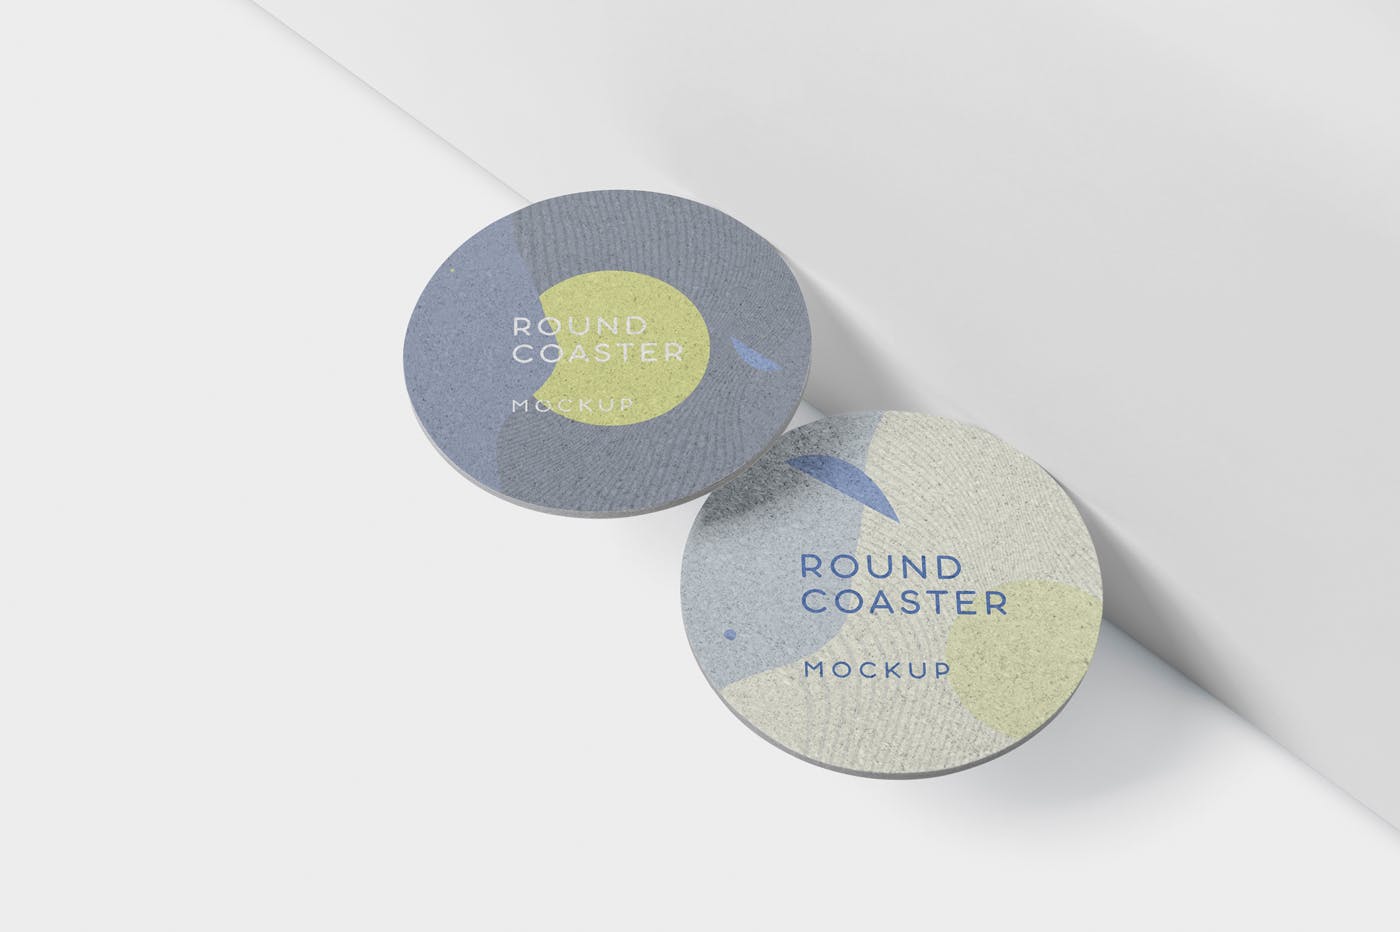 圆形杯垫图案设计效果图素材库精选 Round Coaster Mock-Up – Medium Size插图(4)